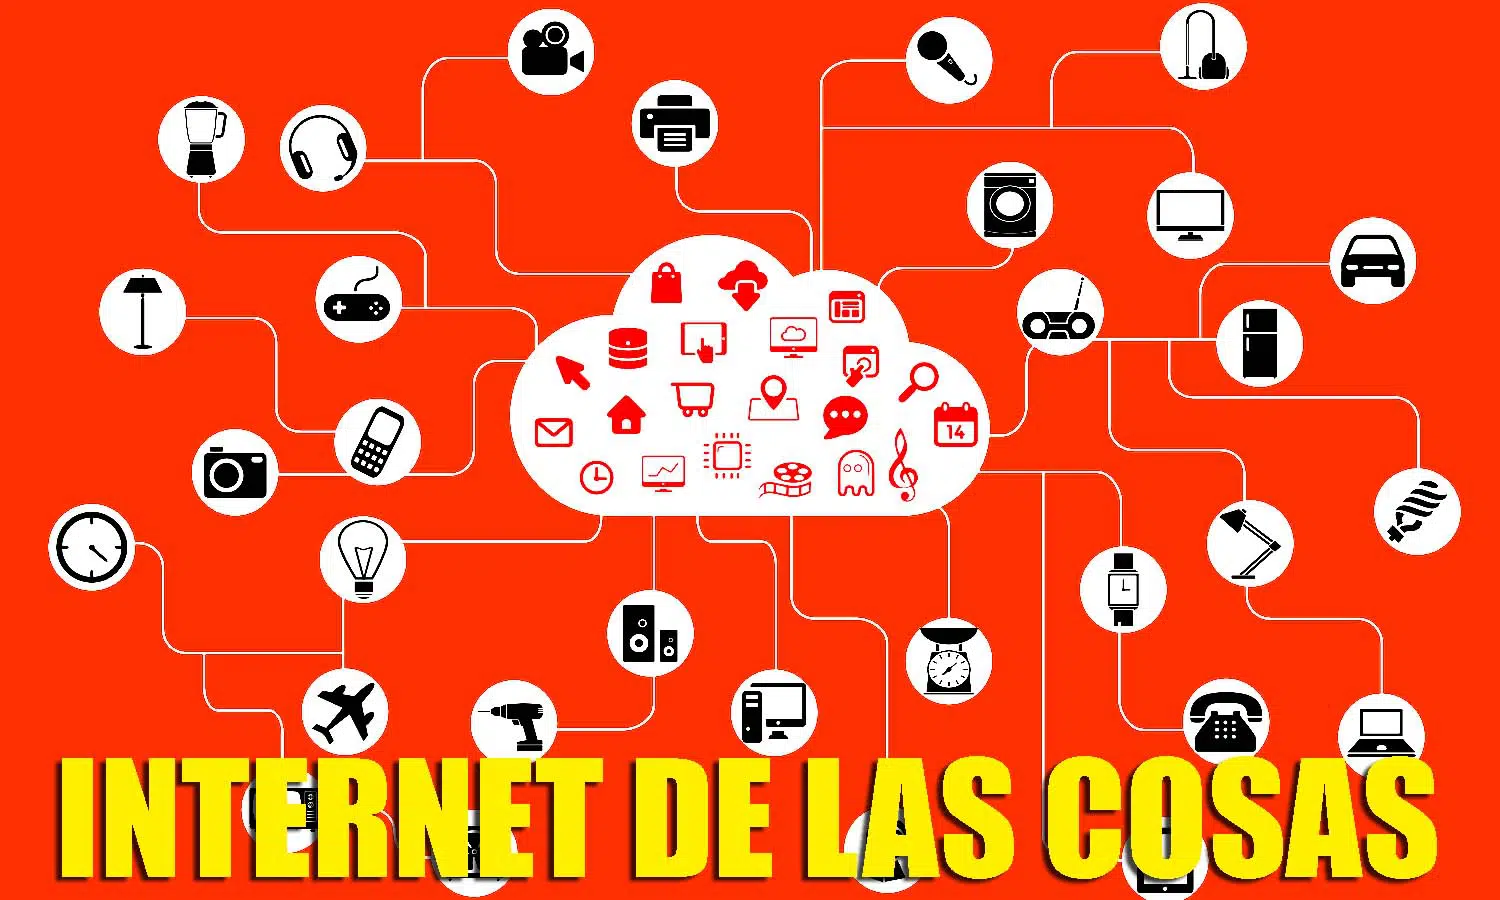 El Internet de las cosas ya está operativo en muchas empresas españolas